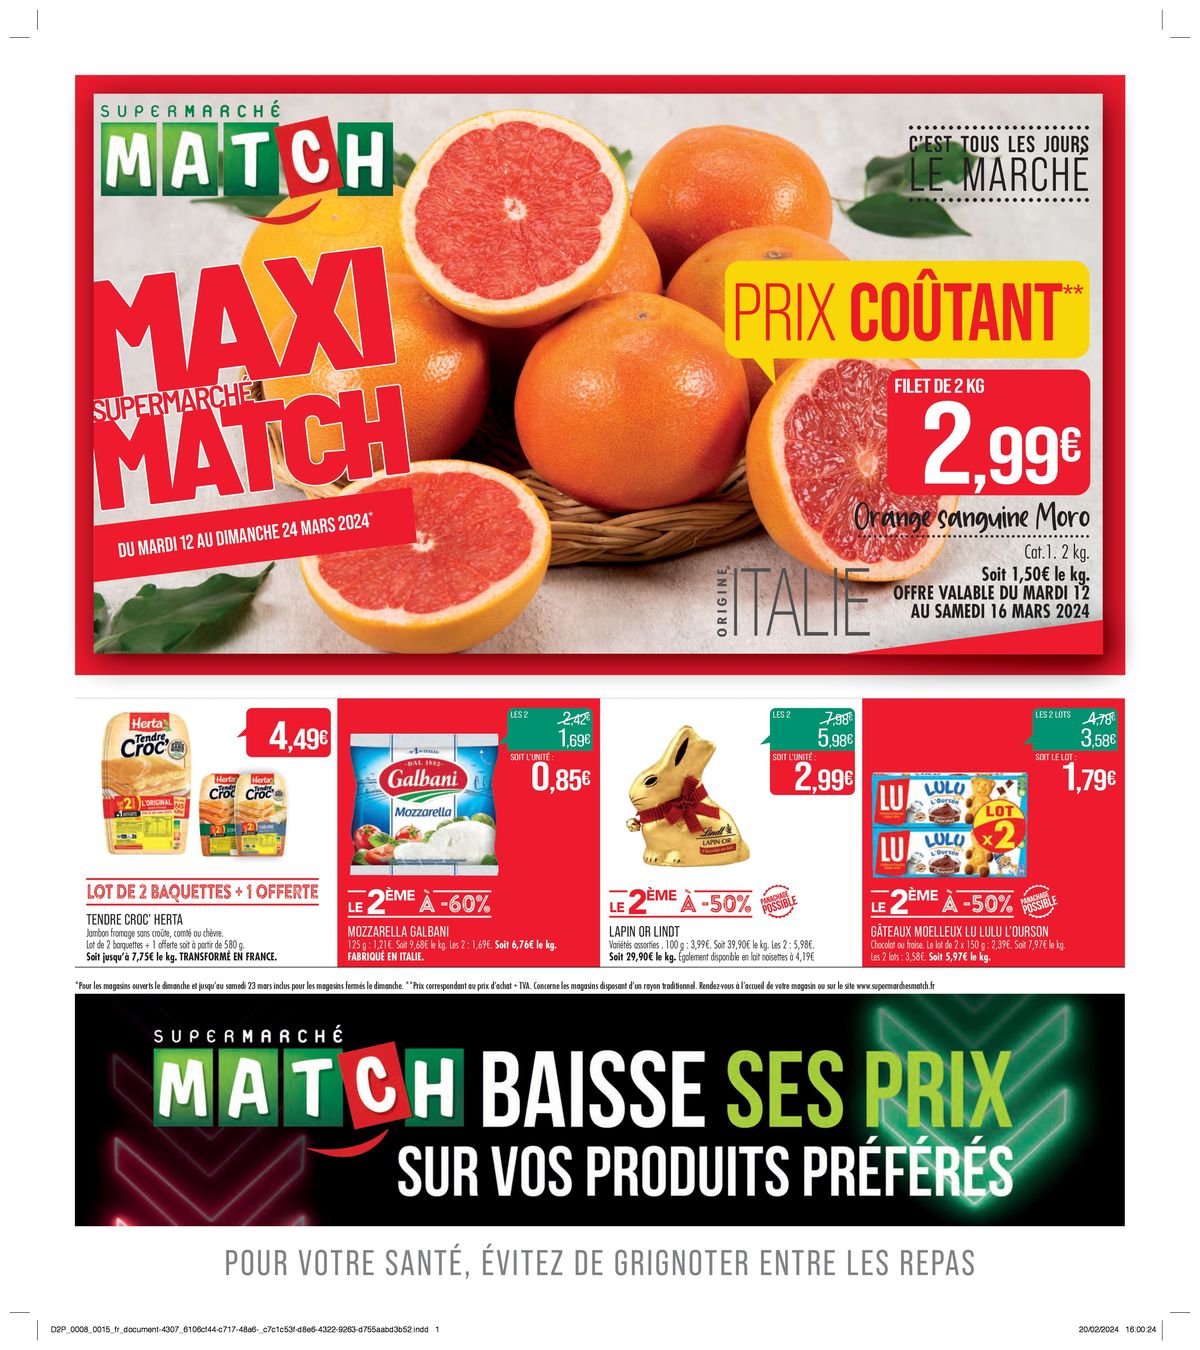 Catalogue Match baisse ses prix sur vos produits préférés, page 00001